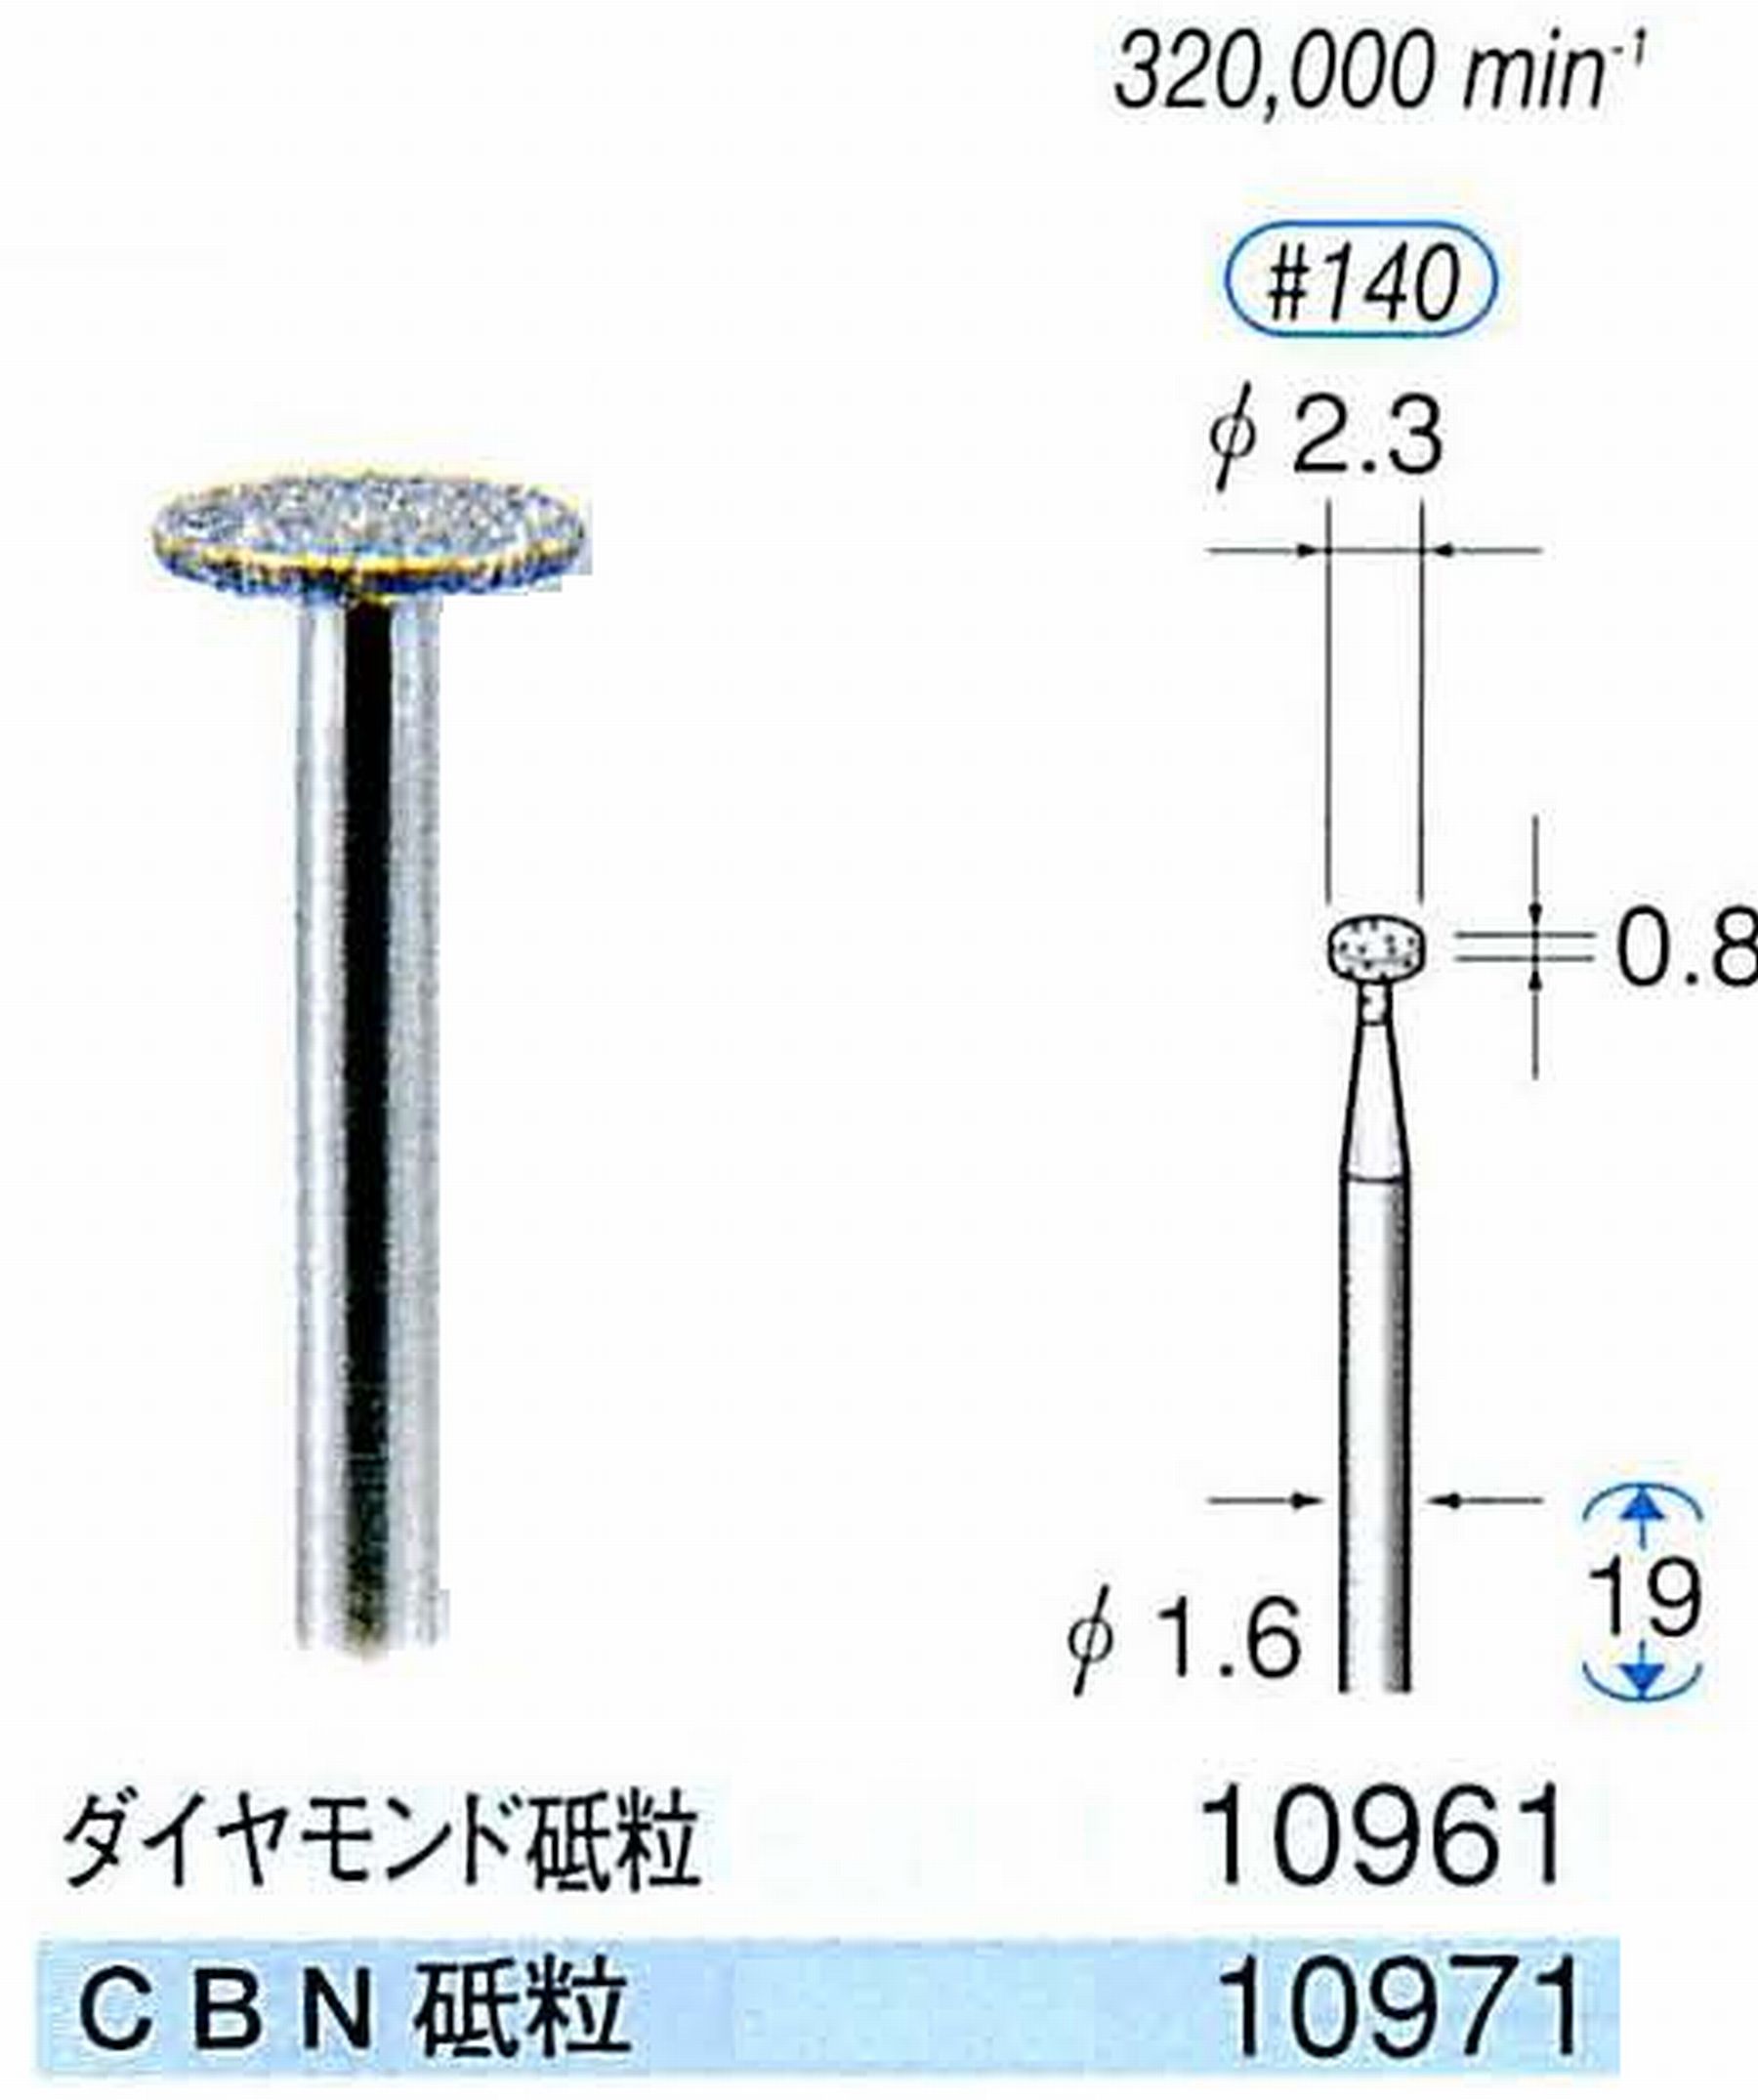 ナカニシ/NAKANISHI 電着CBNバー(ミニチュアタイプ)CBN砥粒 軸径(シャンク)φ1.6mm 10971